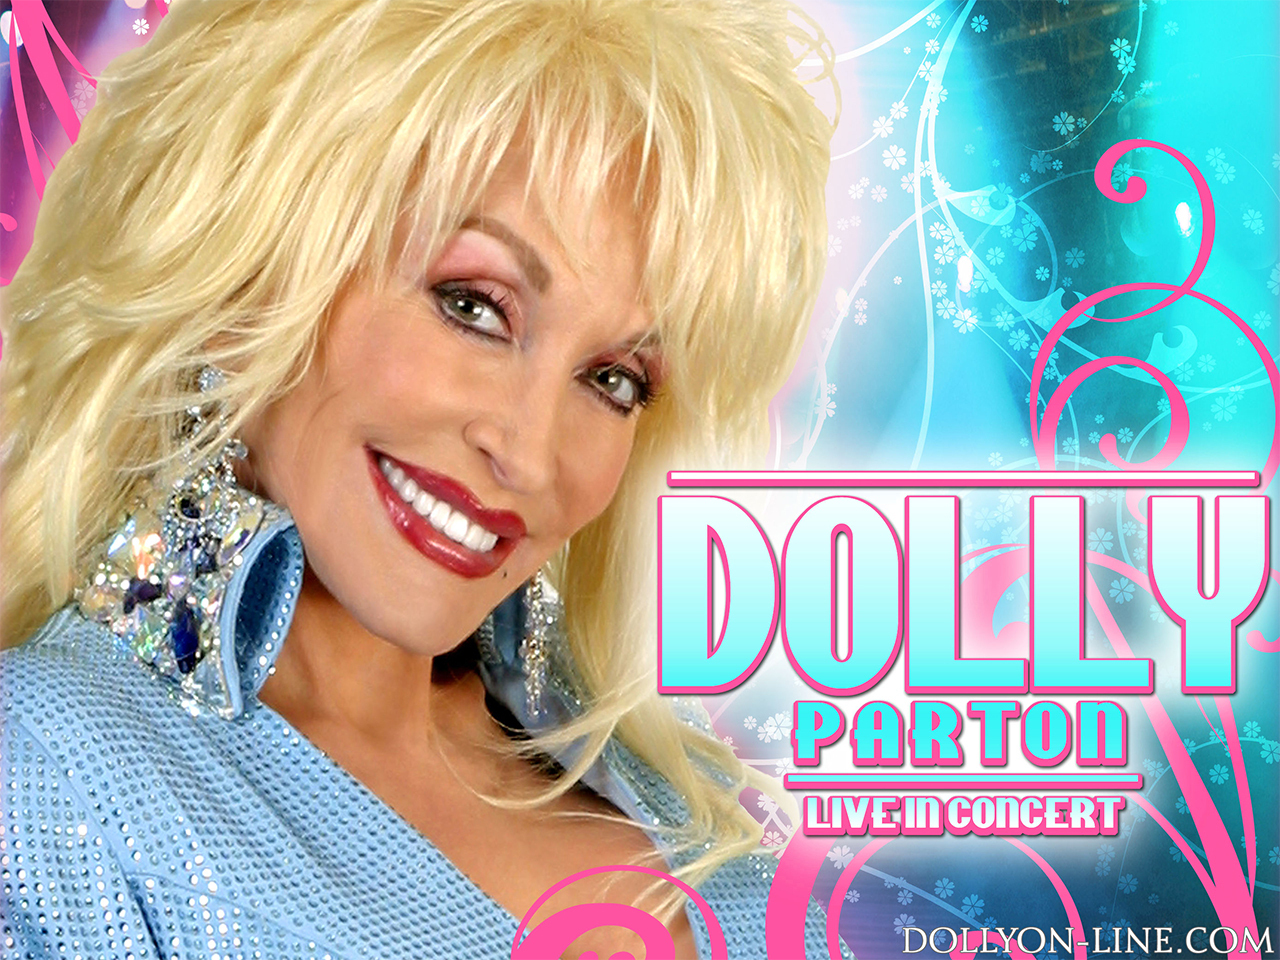 Dolly Parton dolly parton 10888463 1280 960